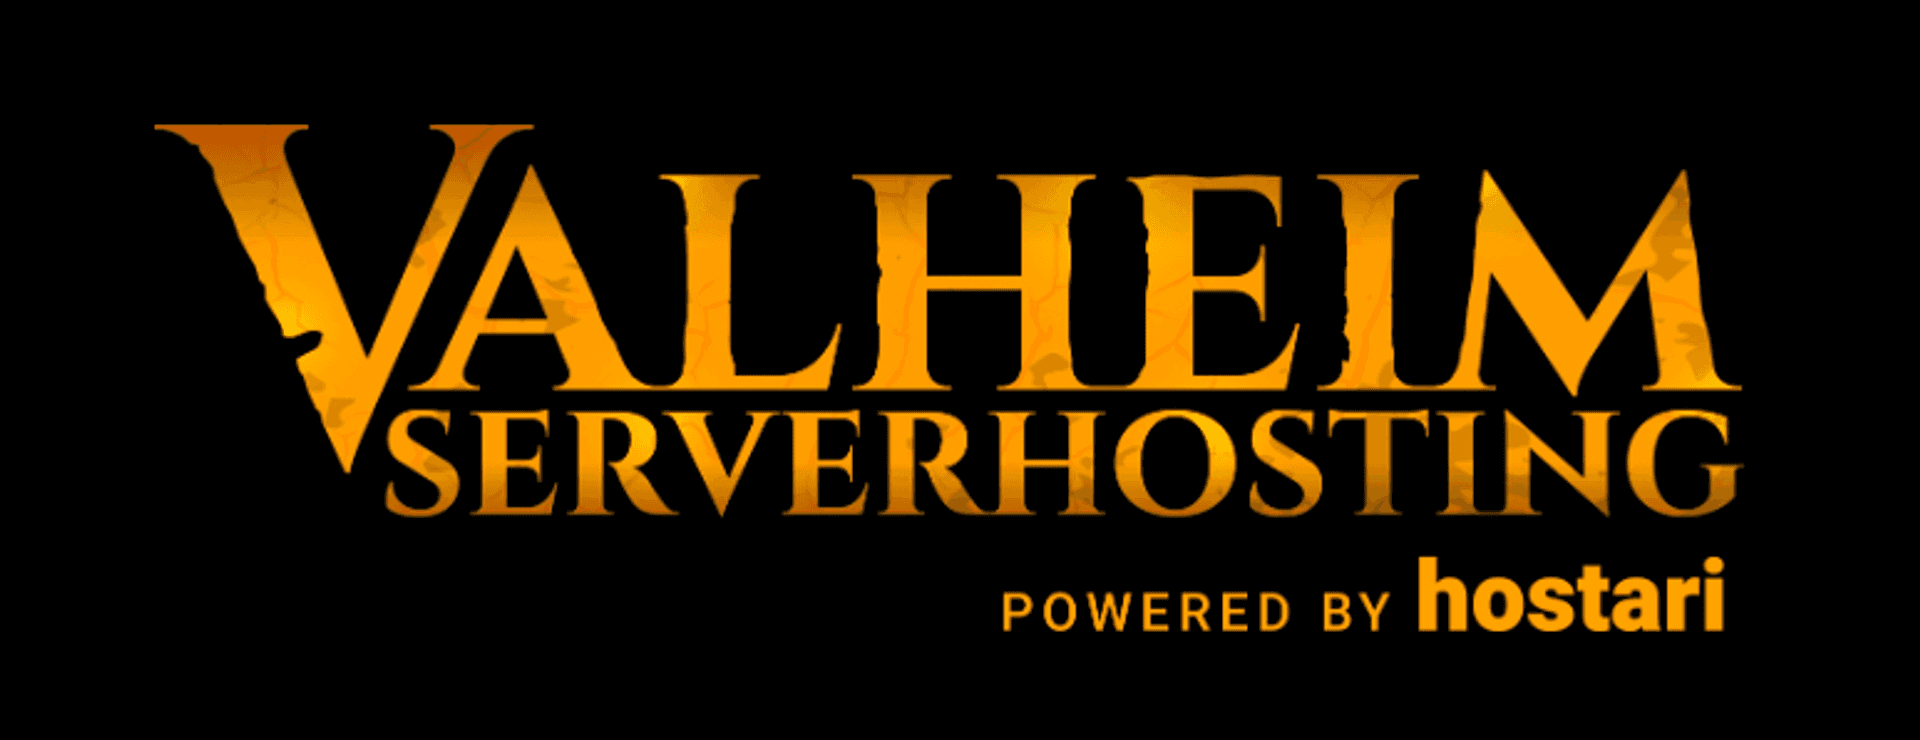 Valheim Server Hosting logo